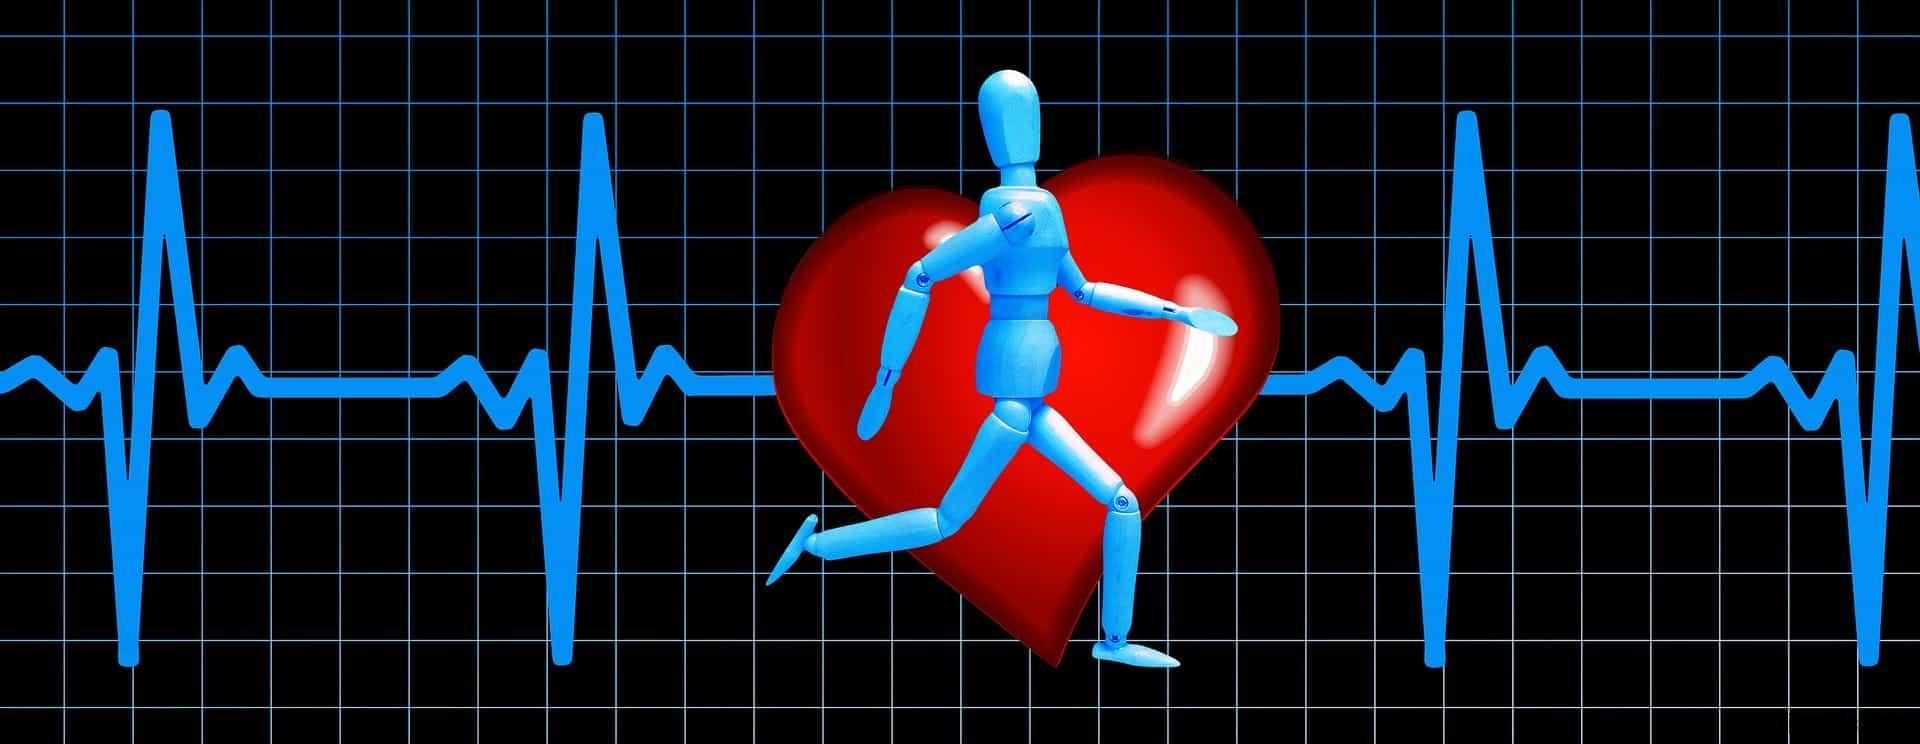 Comment bien faire sa cohérence cardiaque ?